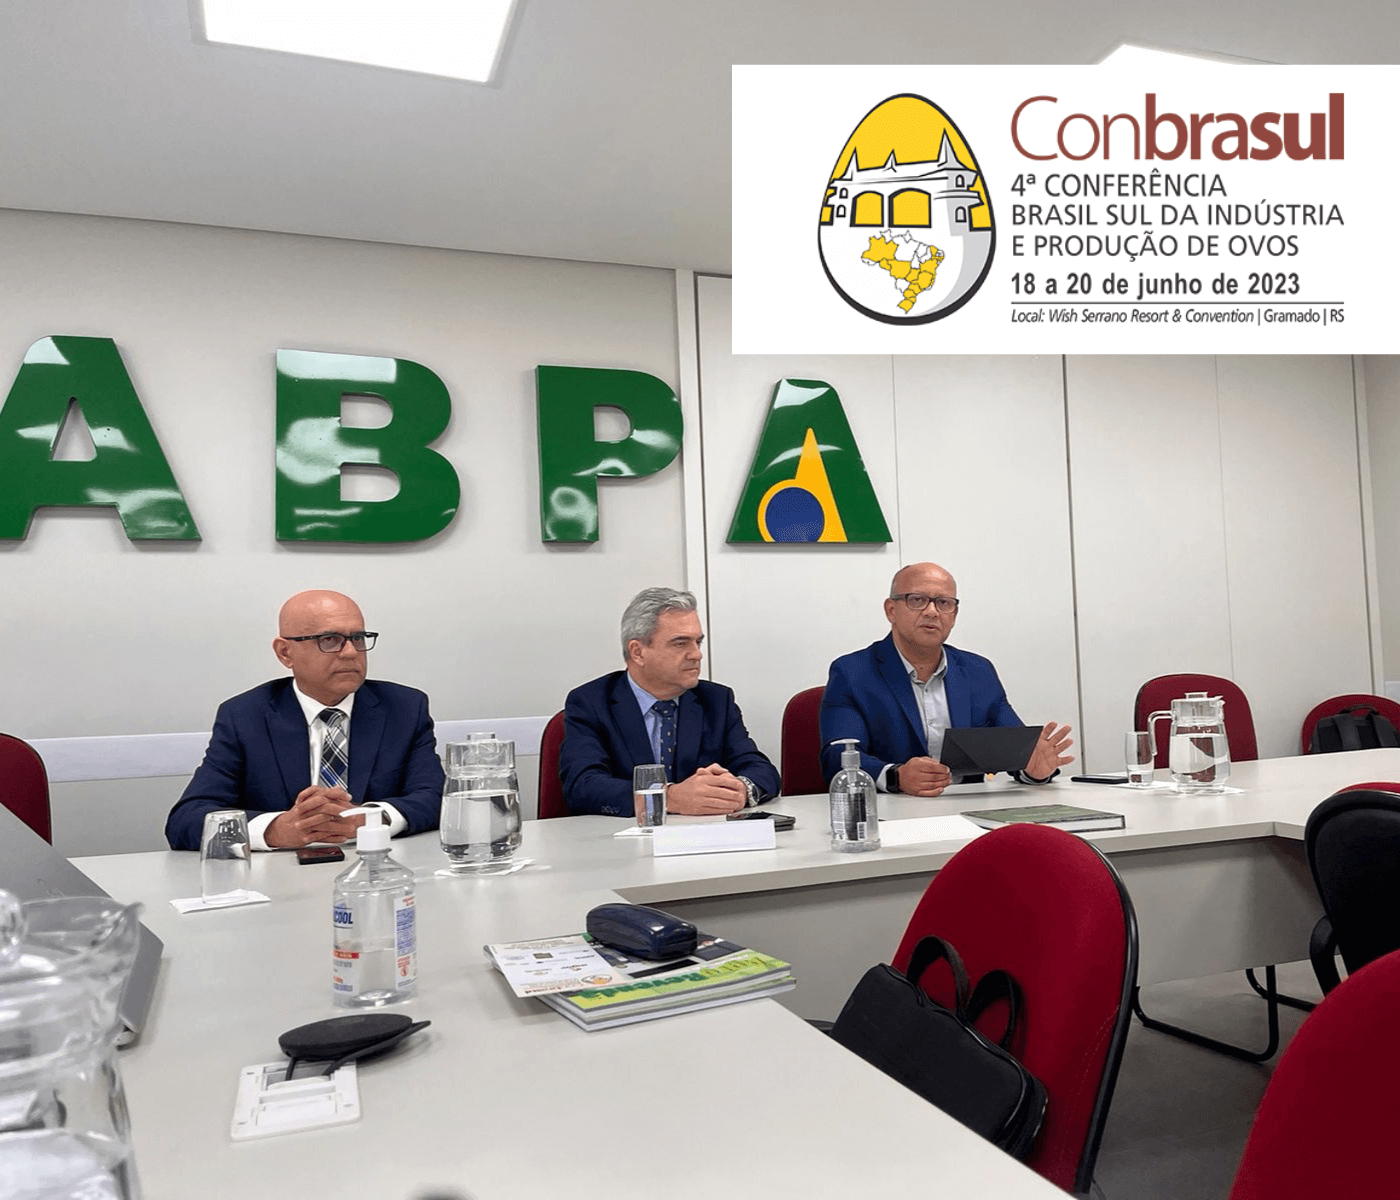 Coordenação da 4ª Conbrasul Ovos 2023 realiza encontro na sede da ABPA, em São Paulo